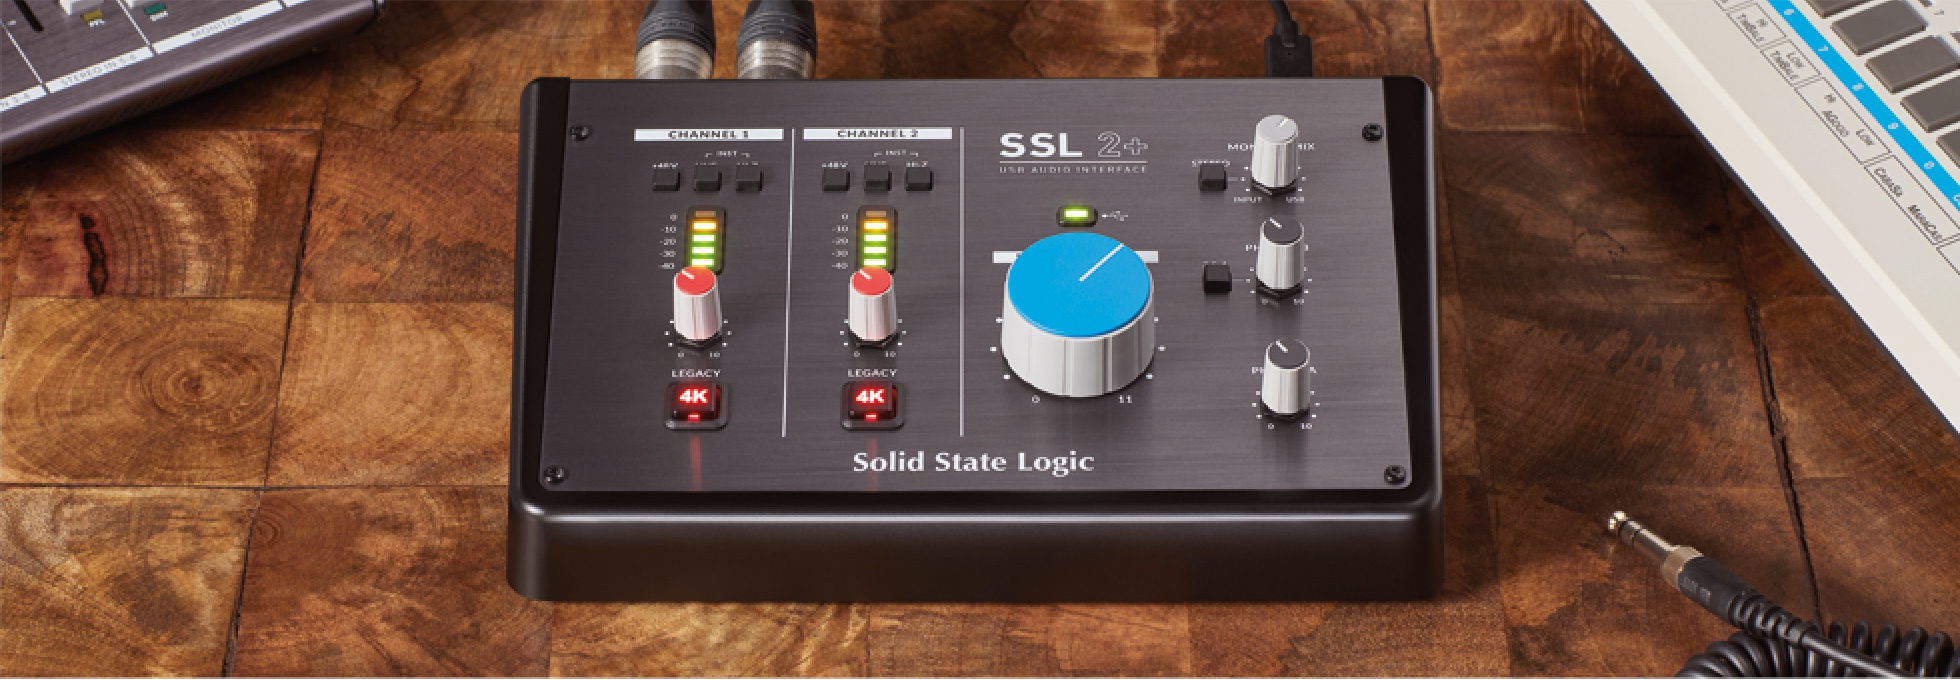 【入荷情報】Solid State logic / SSL2+